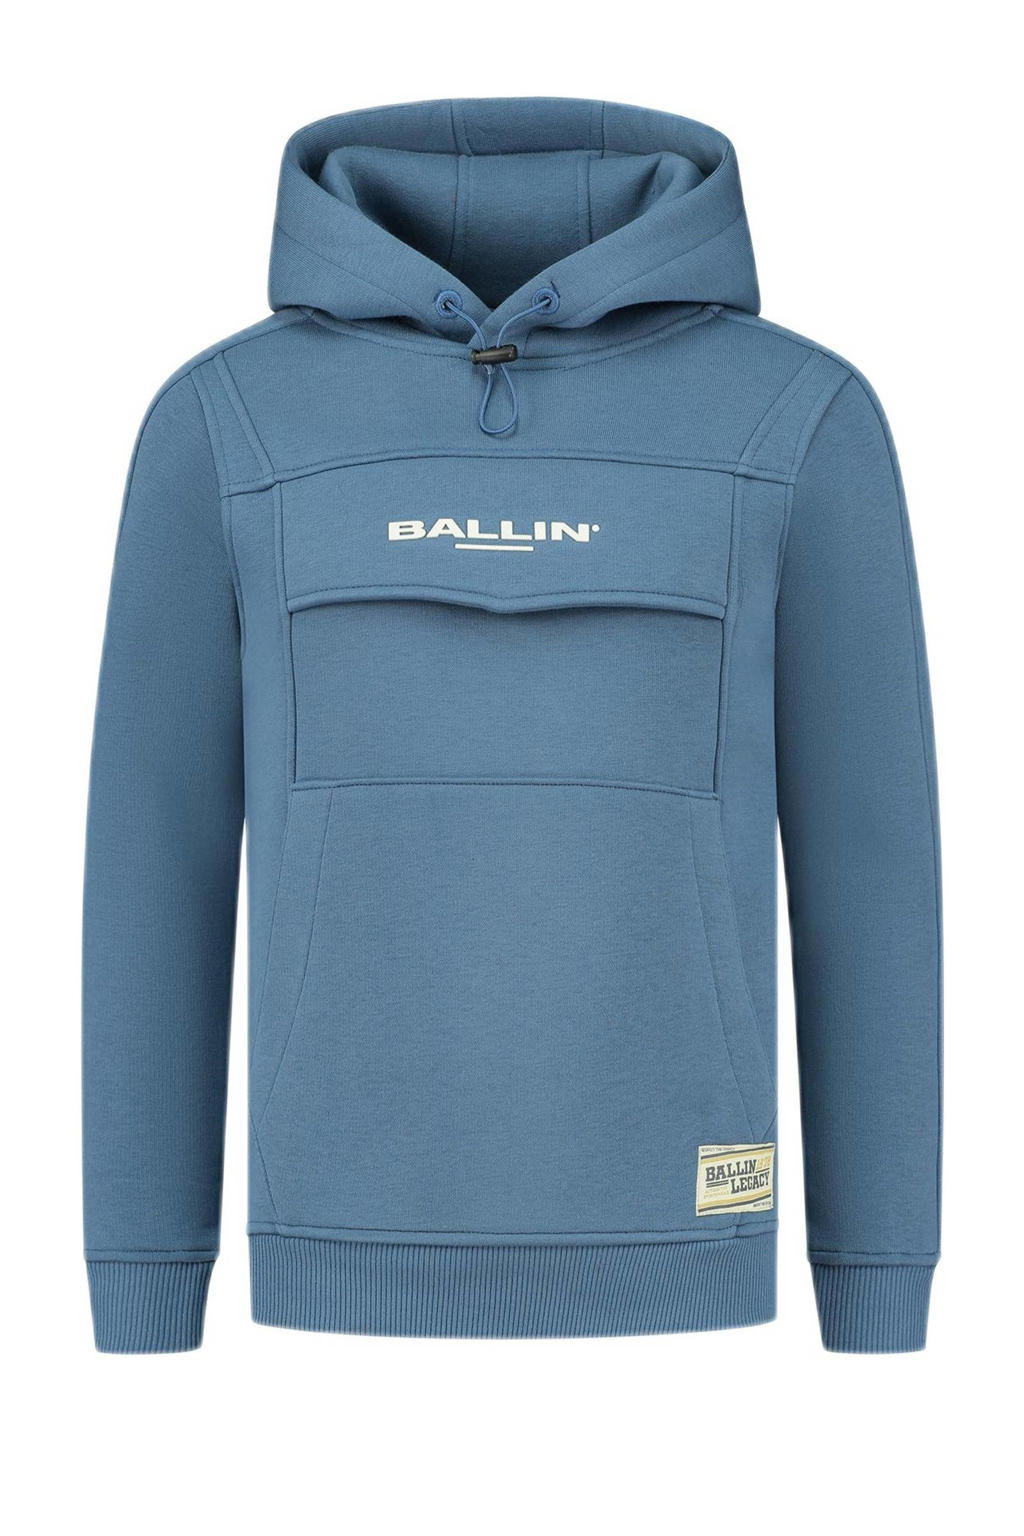 Blauwe jongens Ballin hoodie van sweat materiaal met logo dessin, lange mouwen, capuchon en geribde boorden